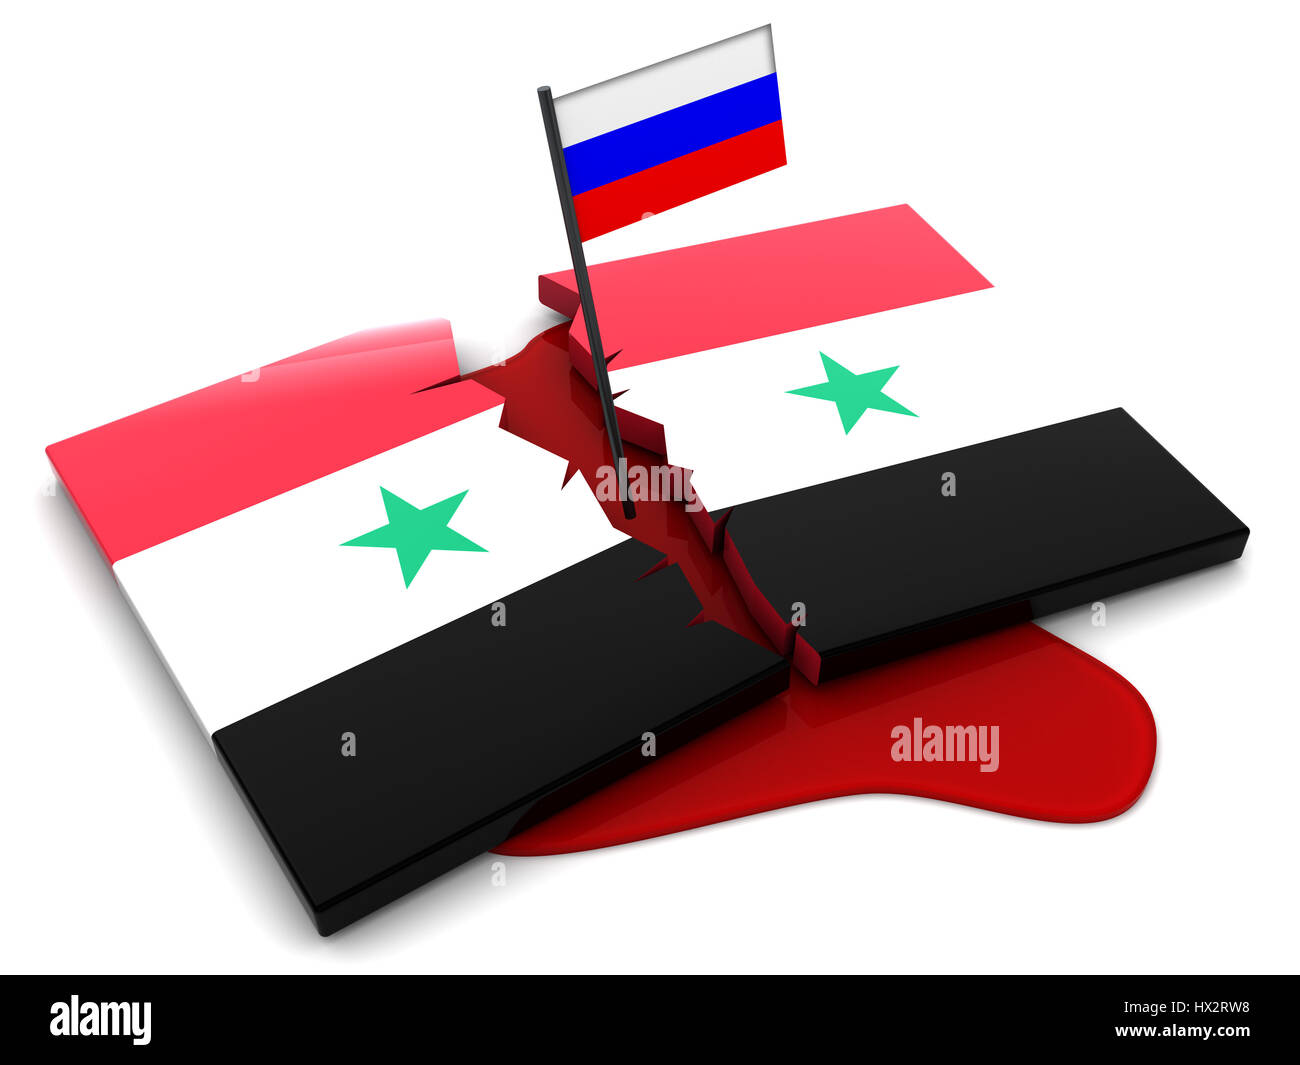 Die Flagge von Syrien, Land im Mittleren Osten Stock Photo - Alamy